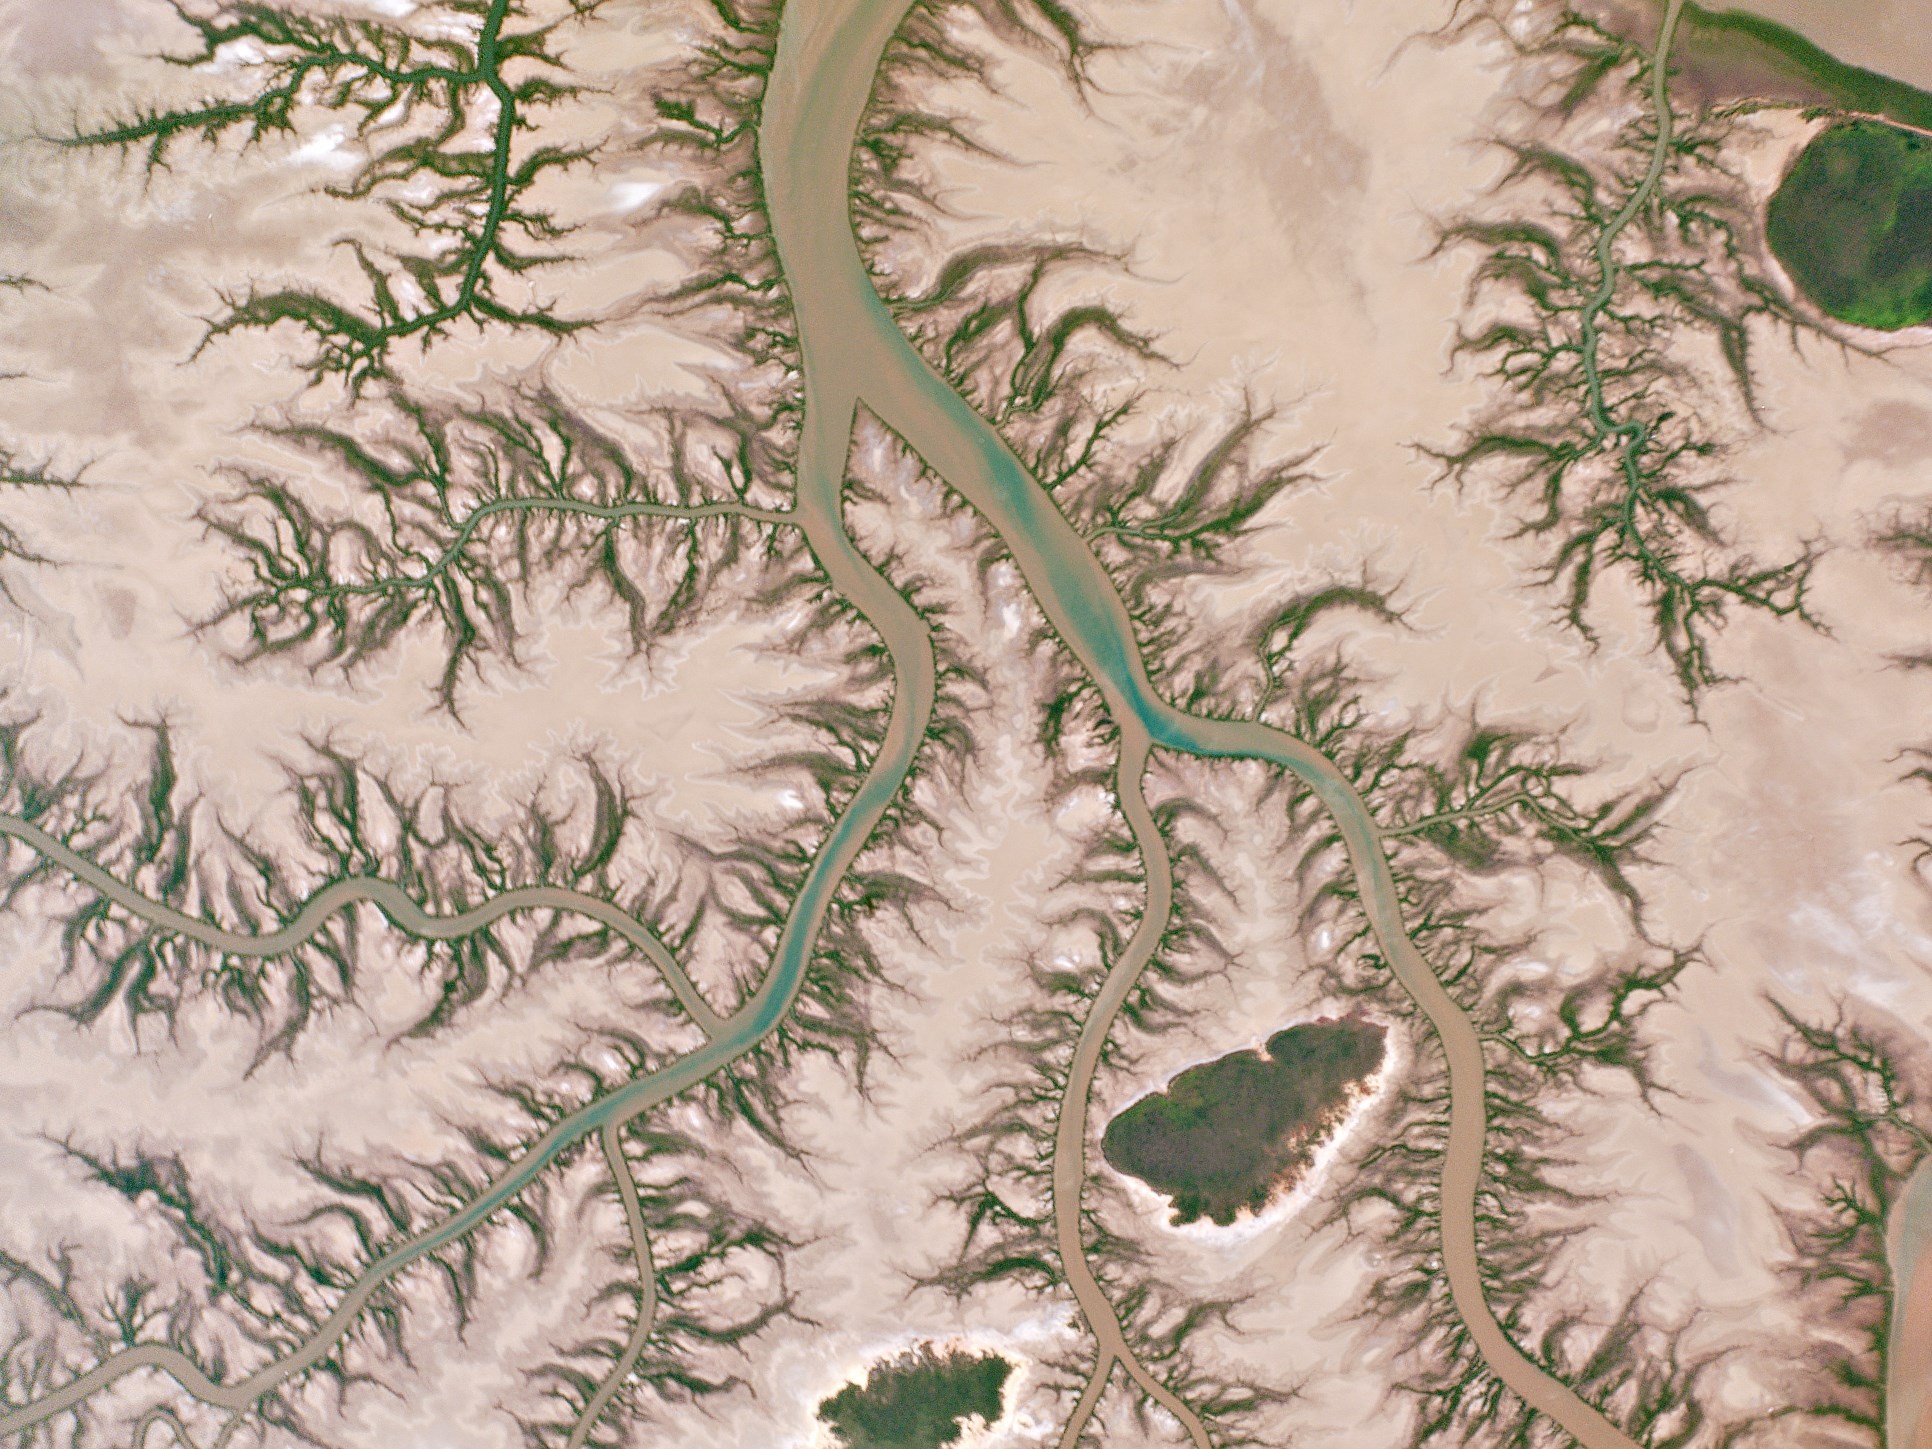 Рис. 2. Разветвленные притоки, которые выстроились в ряд с мангровыми деревьями, извиваются по приливной отмели вблизи дельты реки Кип в Австралии.